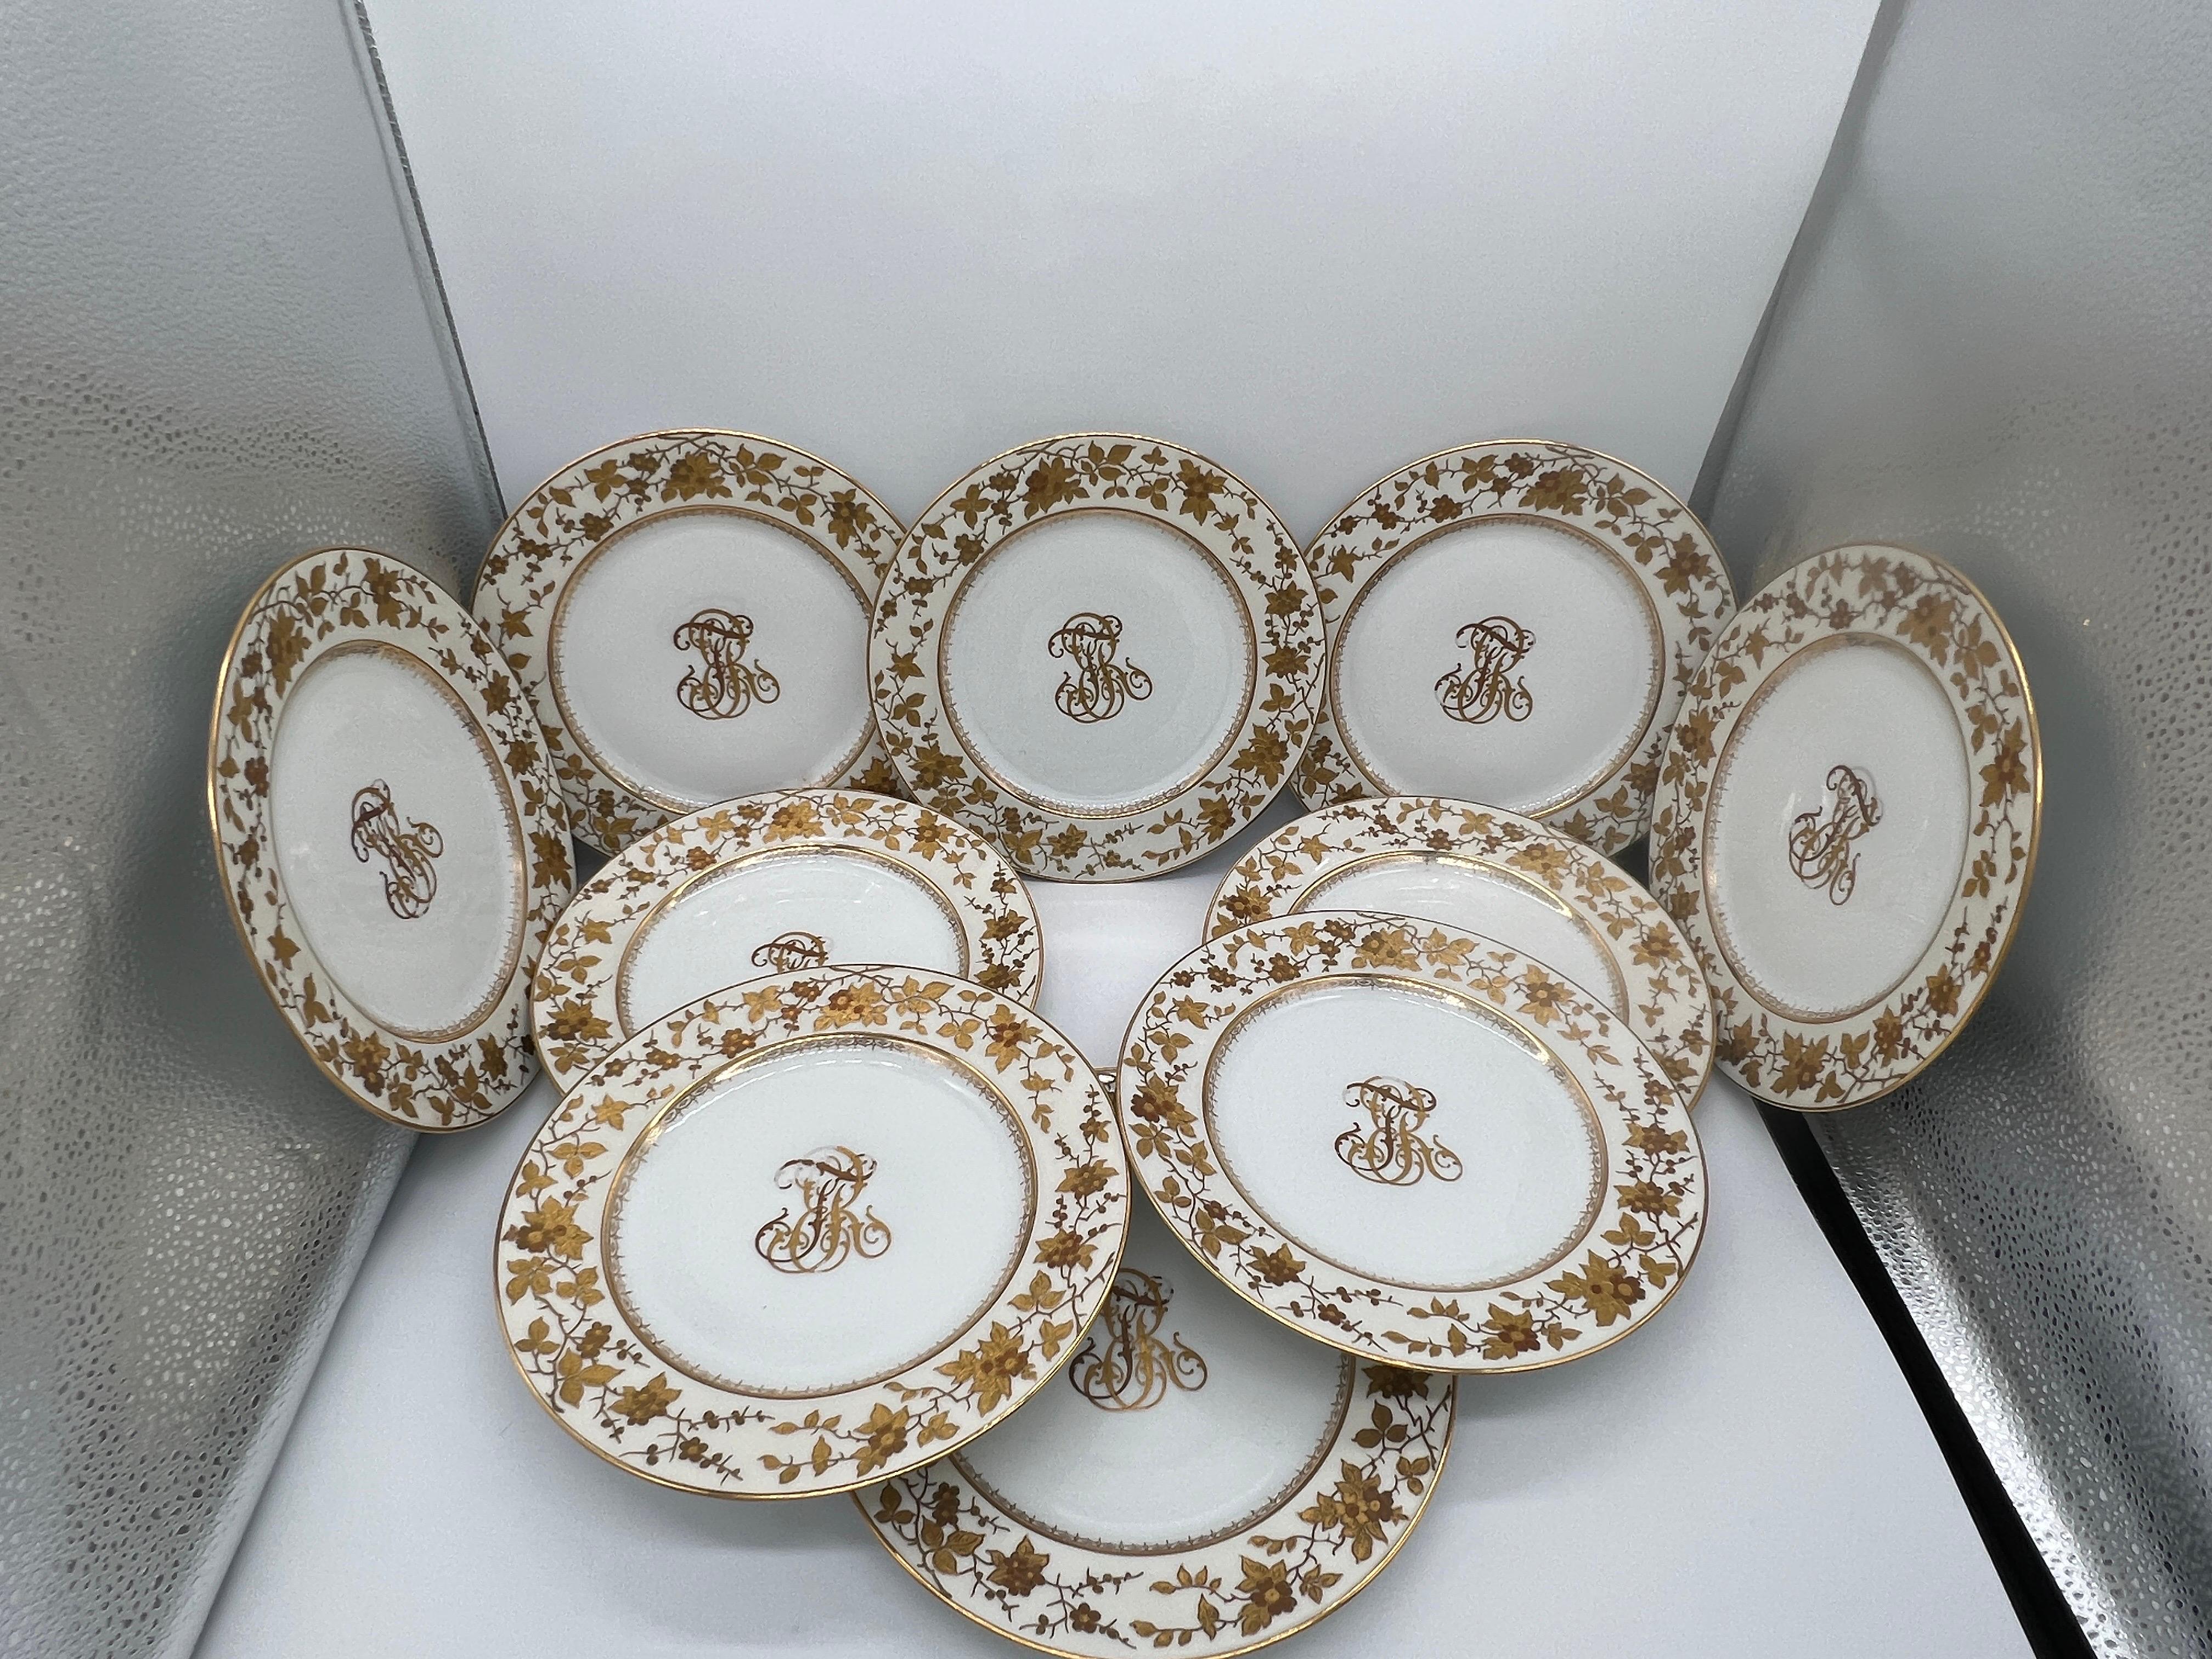 Fischer & Mieg Pirkenhammer (allemand, 19e siècle). 
Un ensemble de 10 superbes assiettes à dîner en porcelaine. Chaque assiette est entièrement décorée de marguerites, de fleurs et de vignes sur le bord et d'une forme géométrique sur la bordure